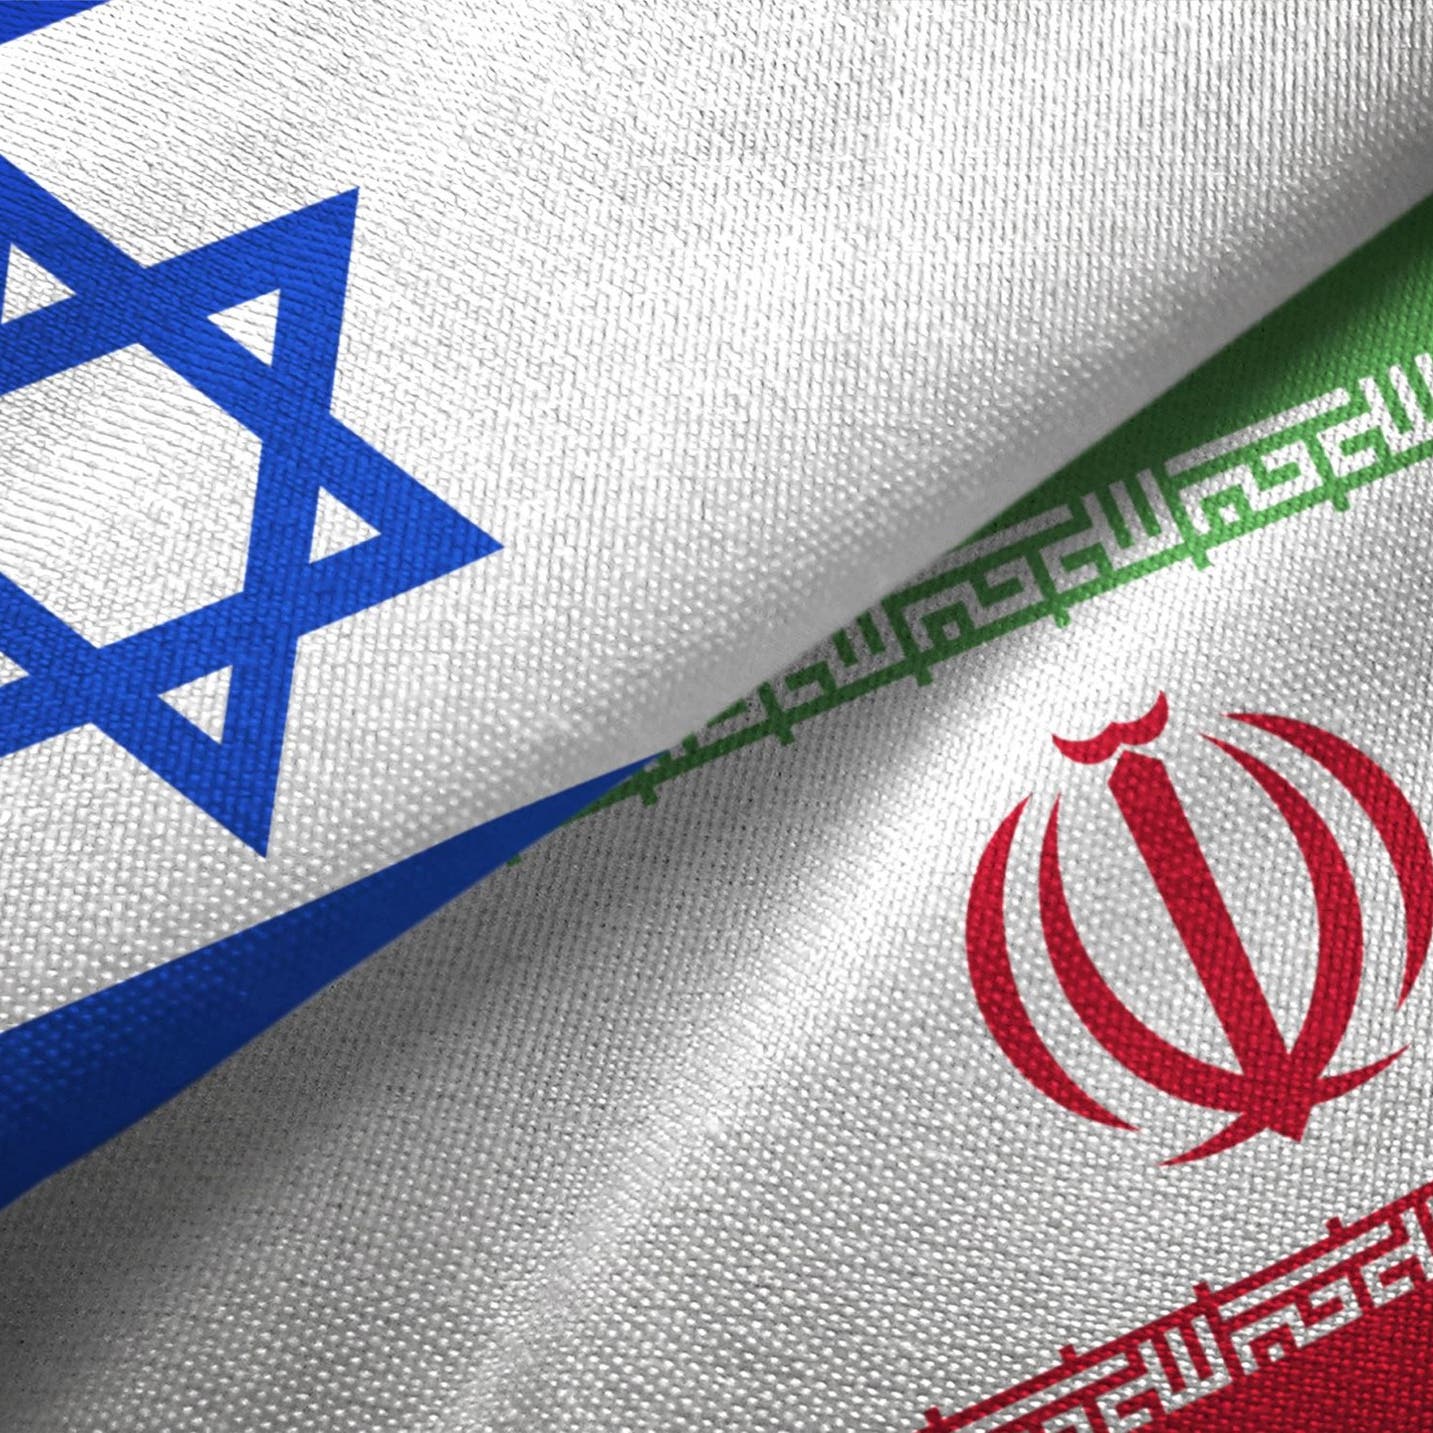 بعد نطنز .. الحكومة الأمنية الإسرائيلية تبحث مواجهة إيران